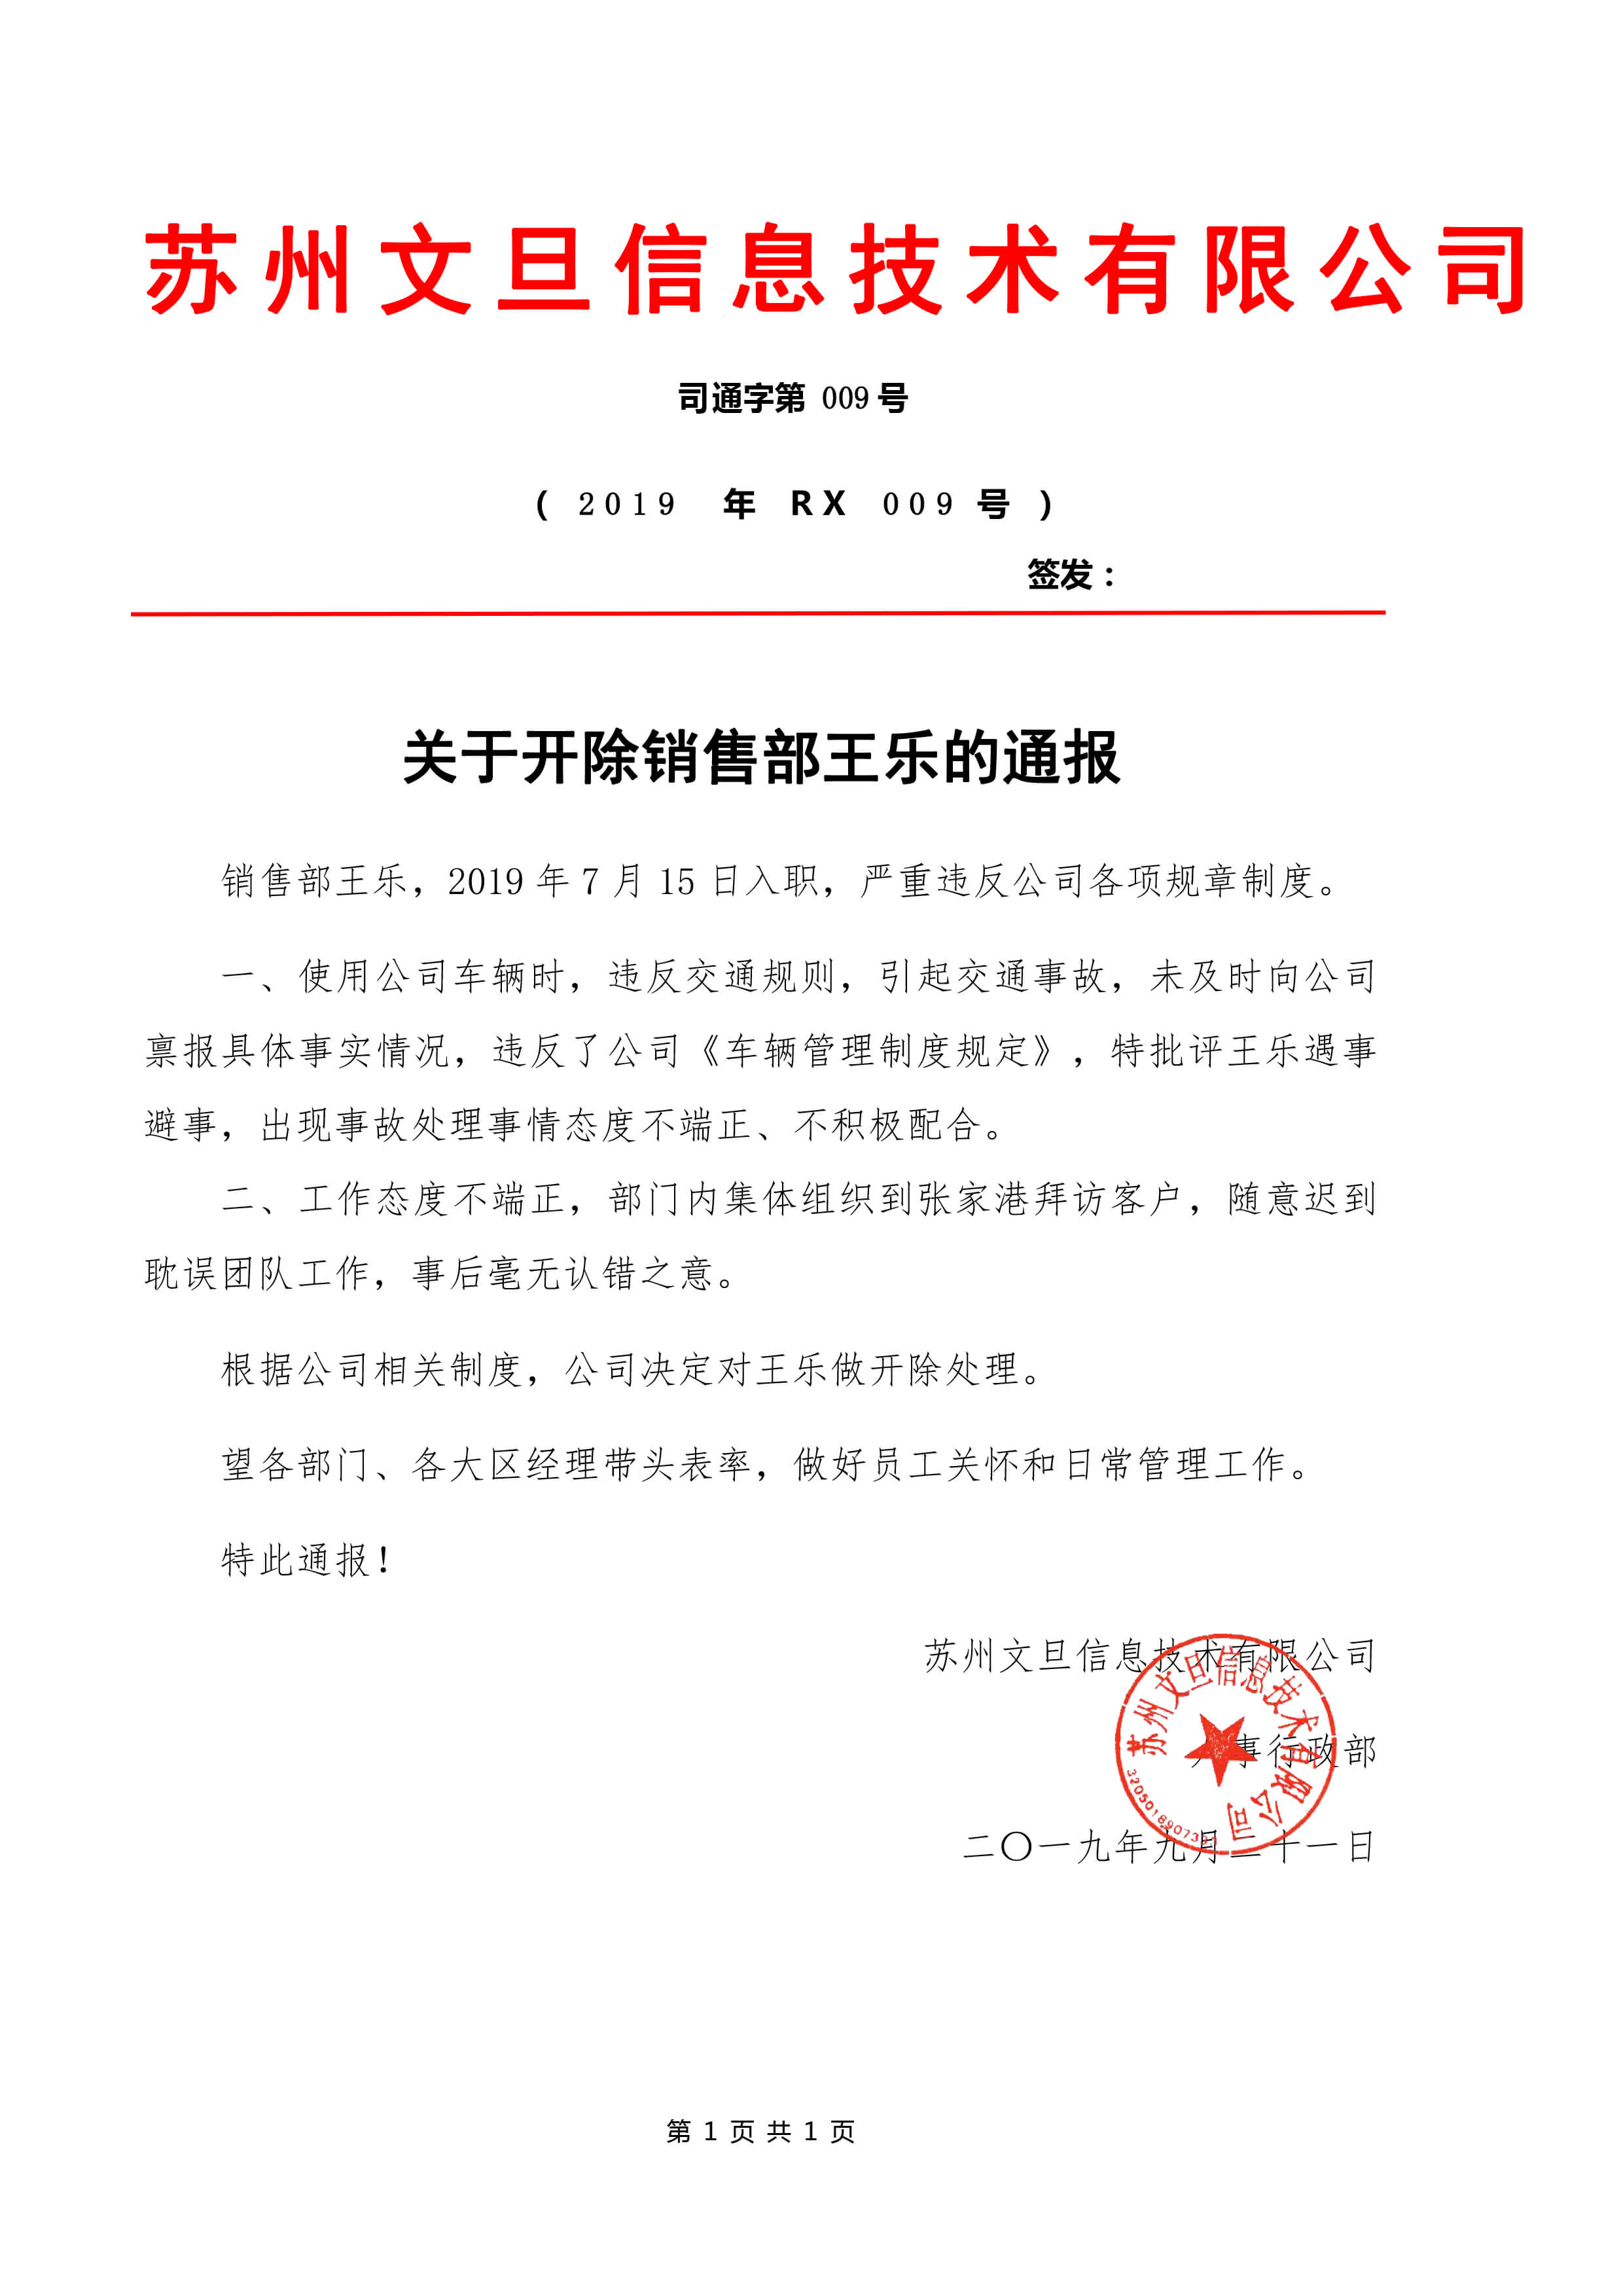 2019009（rx009）-关于开除销售部王乐的通报2019.9.21